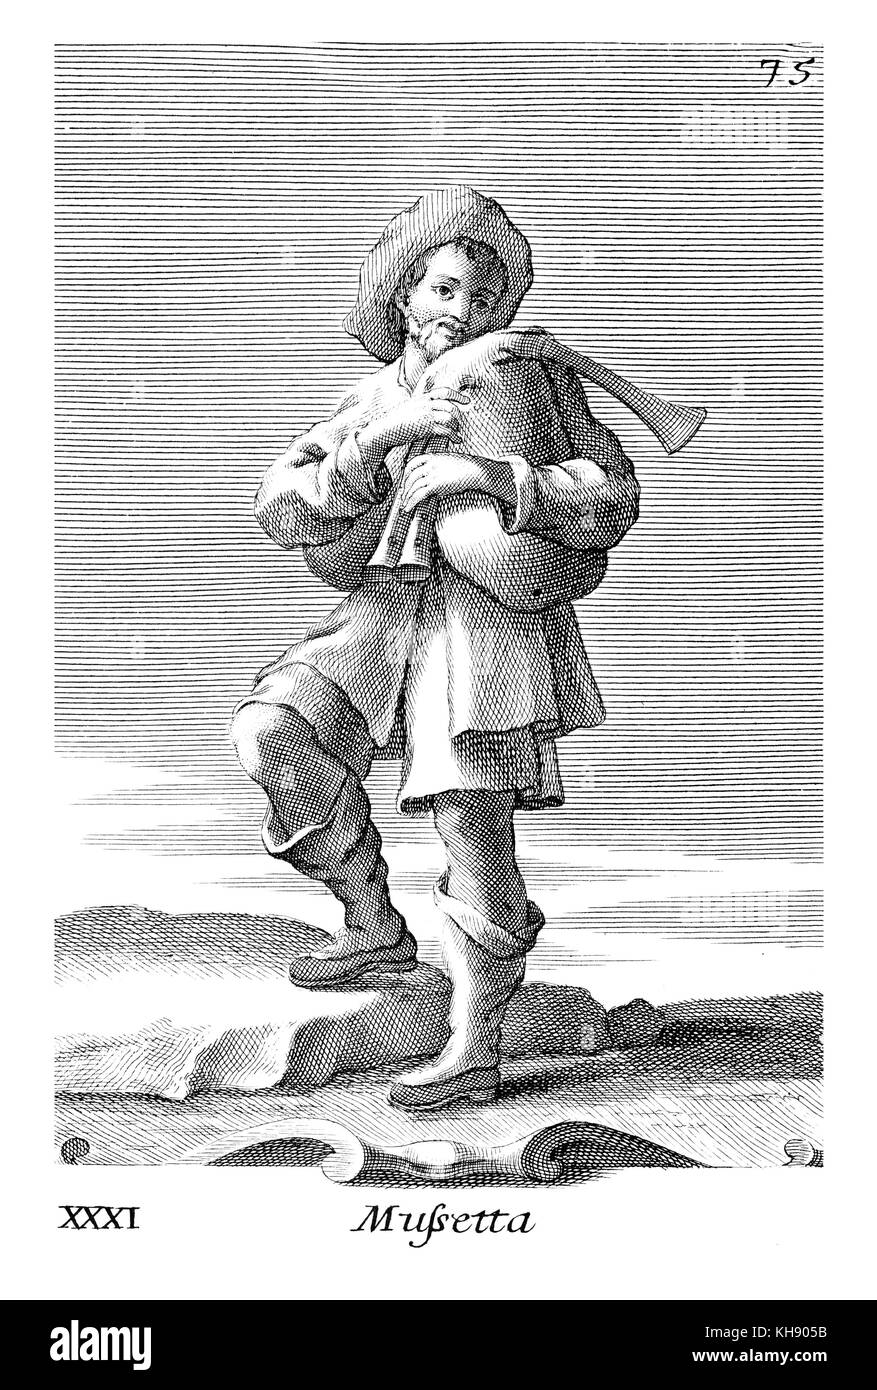 Mann spielt Sourdeline - eine Art Dudelsack, oder Italienisch Musette. Abbildung von Filippo Bonanni's 'Gabinetto Armonico" im Jahre 1723 veröffentlicht, Abbildung 31. Kupferstich von Arnold Van Westerhout. Bildunterschrift liest Mussetta. Stockfoto